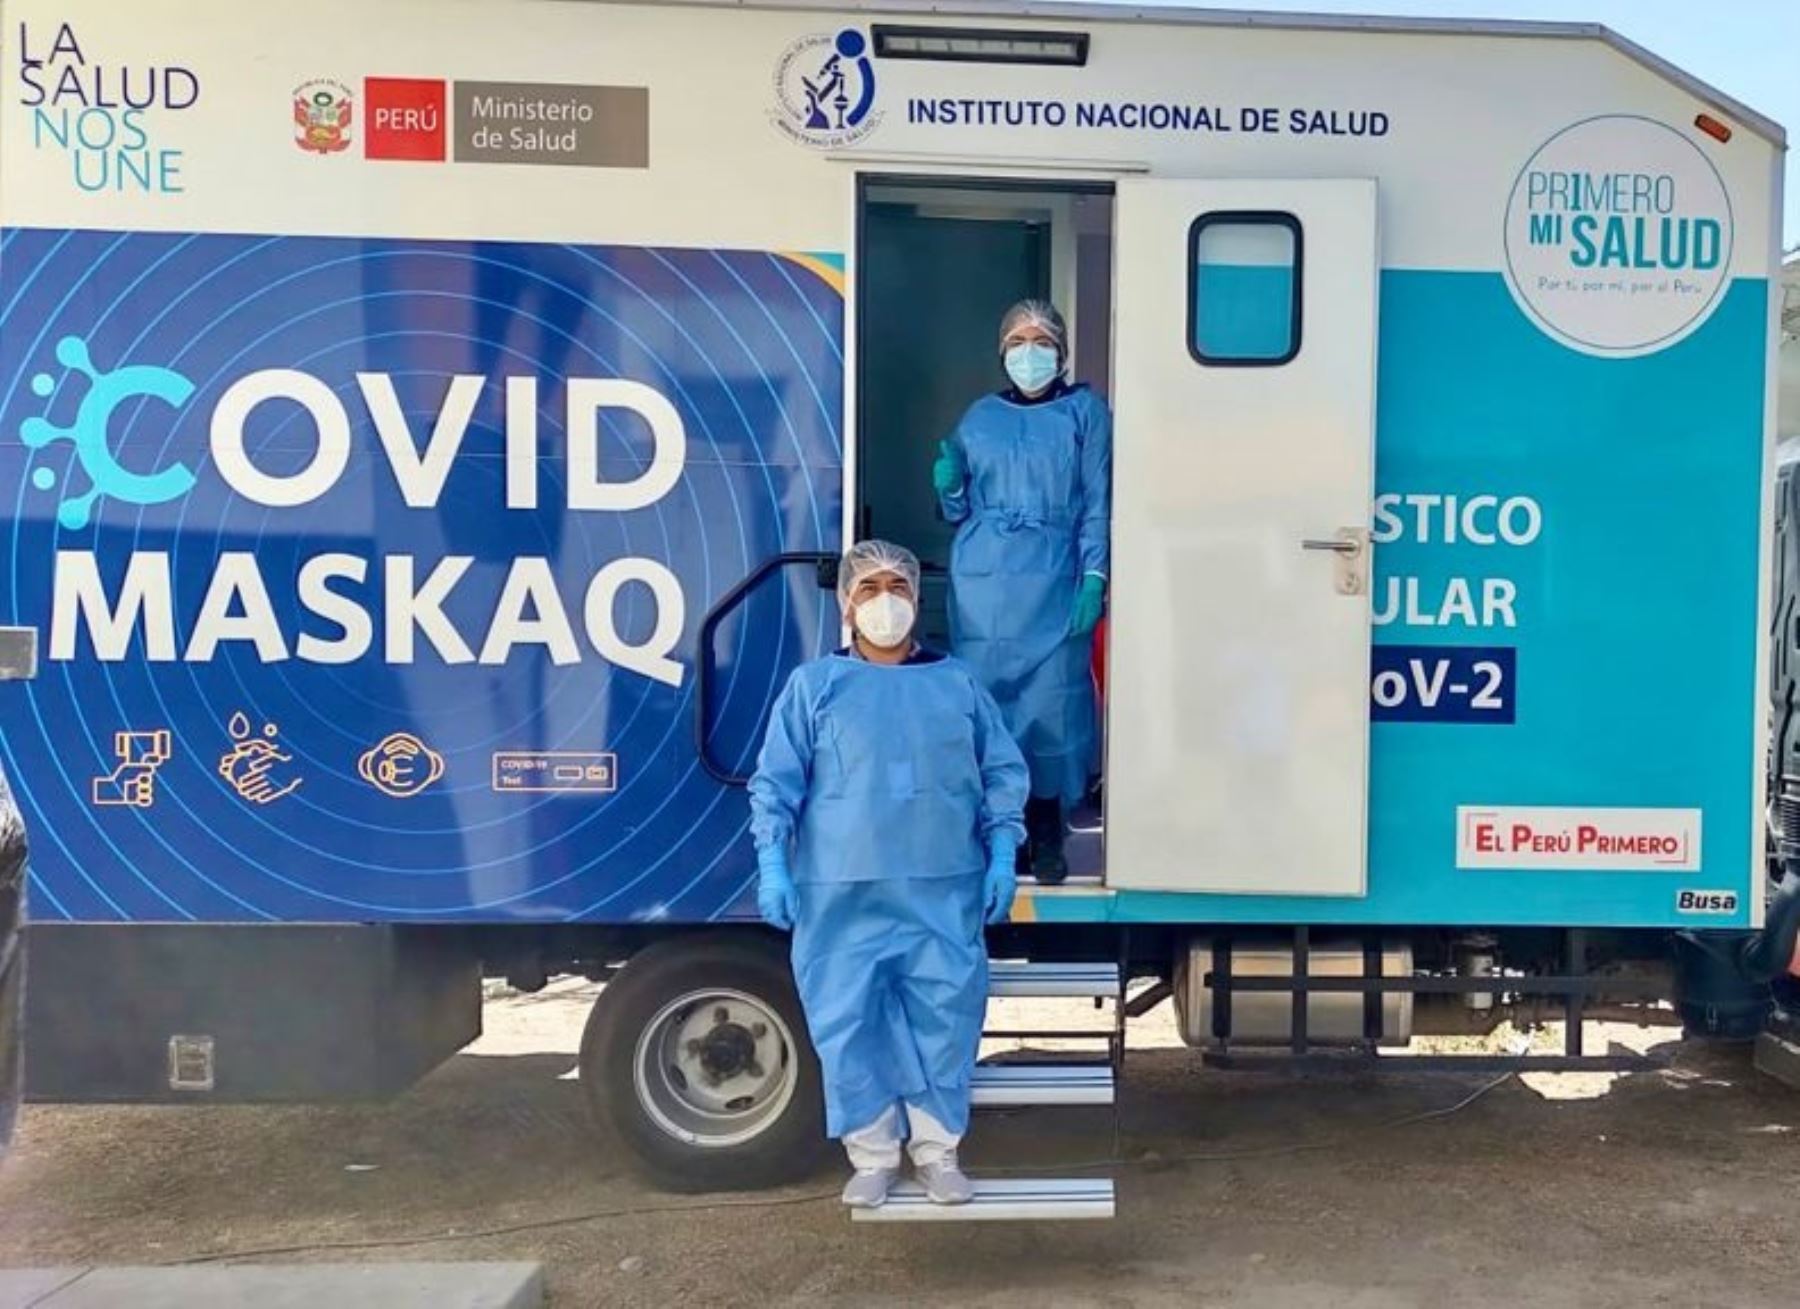 El laboratorio móvil Covid Maskaq realizó más de 50,000 diagnósticos de covid-19 en regiones desde el inicio de sus operaciones a la fecha. ANDINA/Difusión